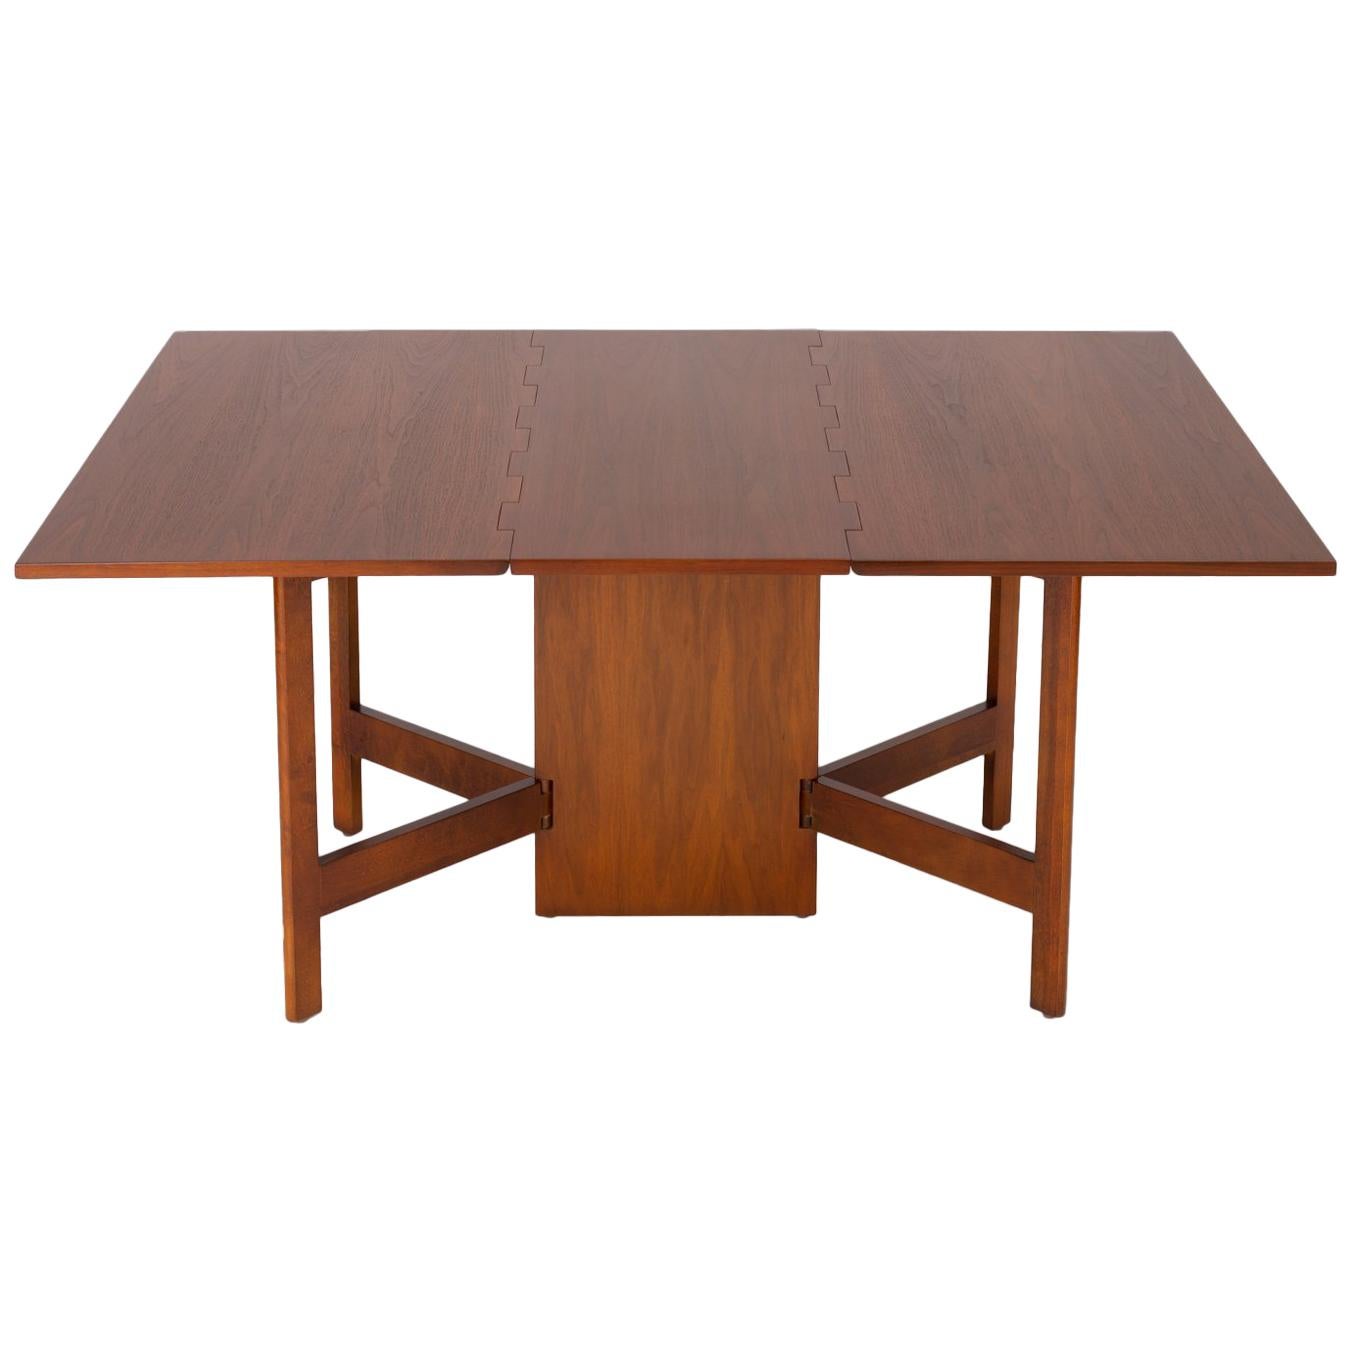 Model 4656 Gateleg Table by George Nelson for Herman Miller